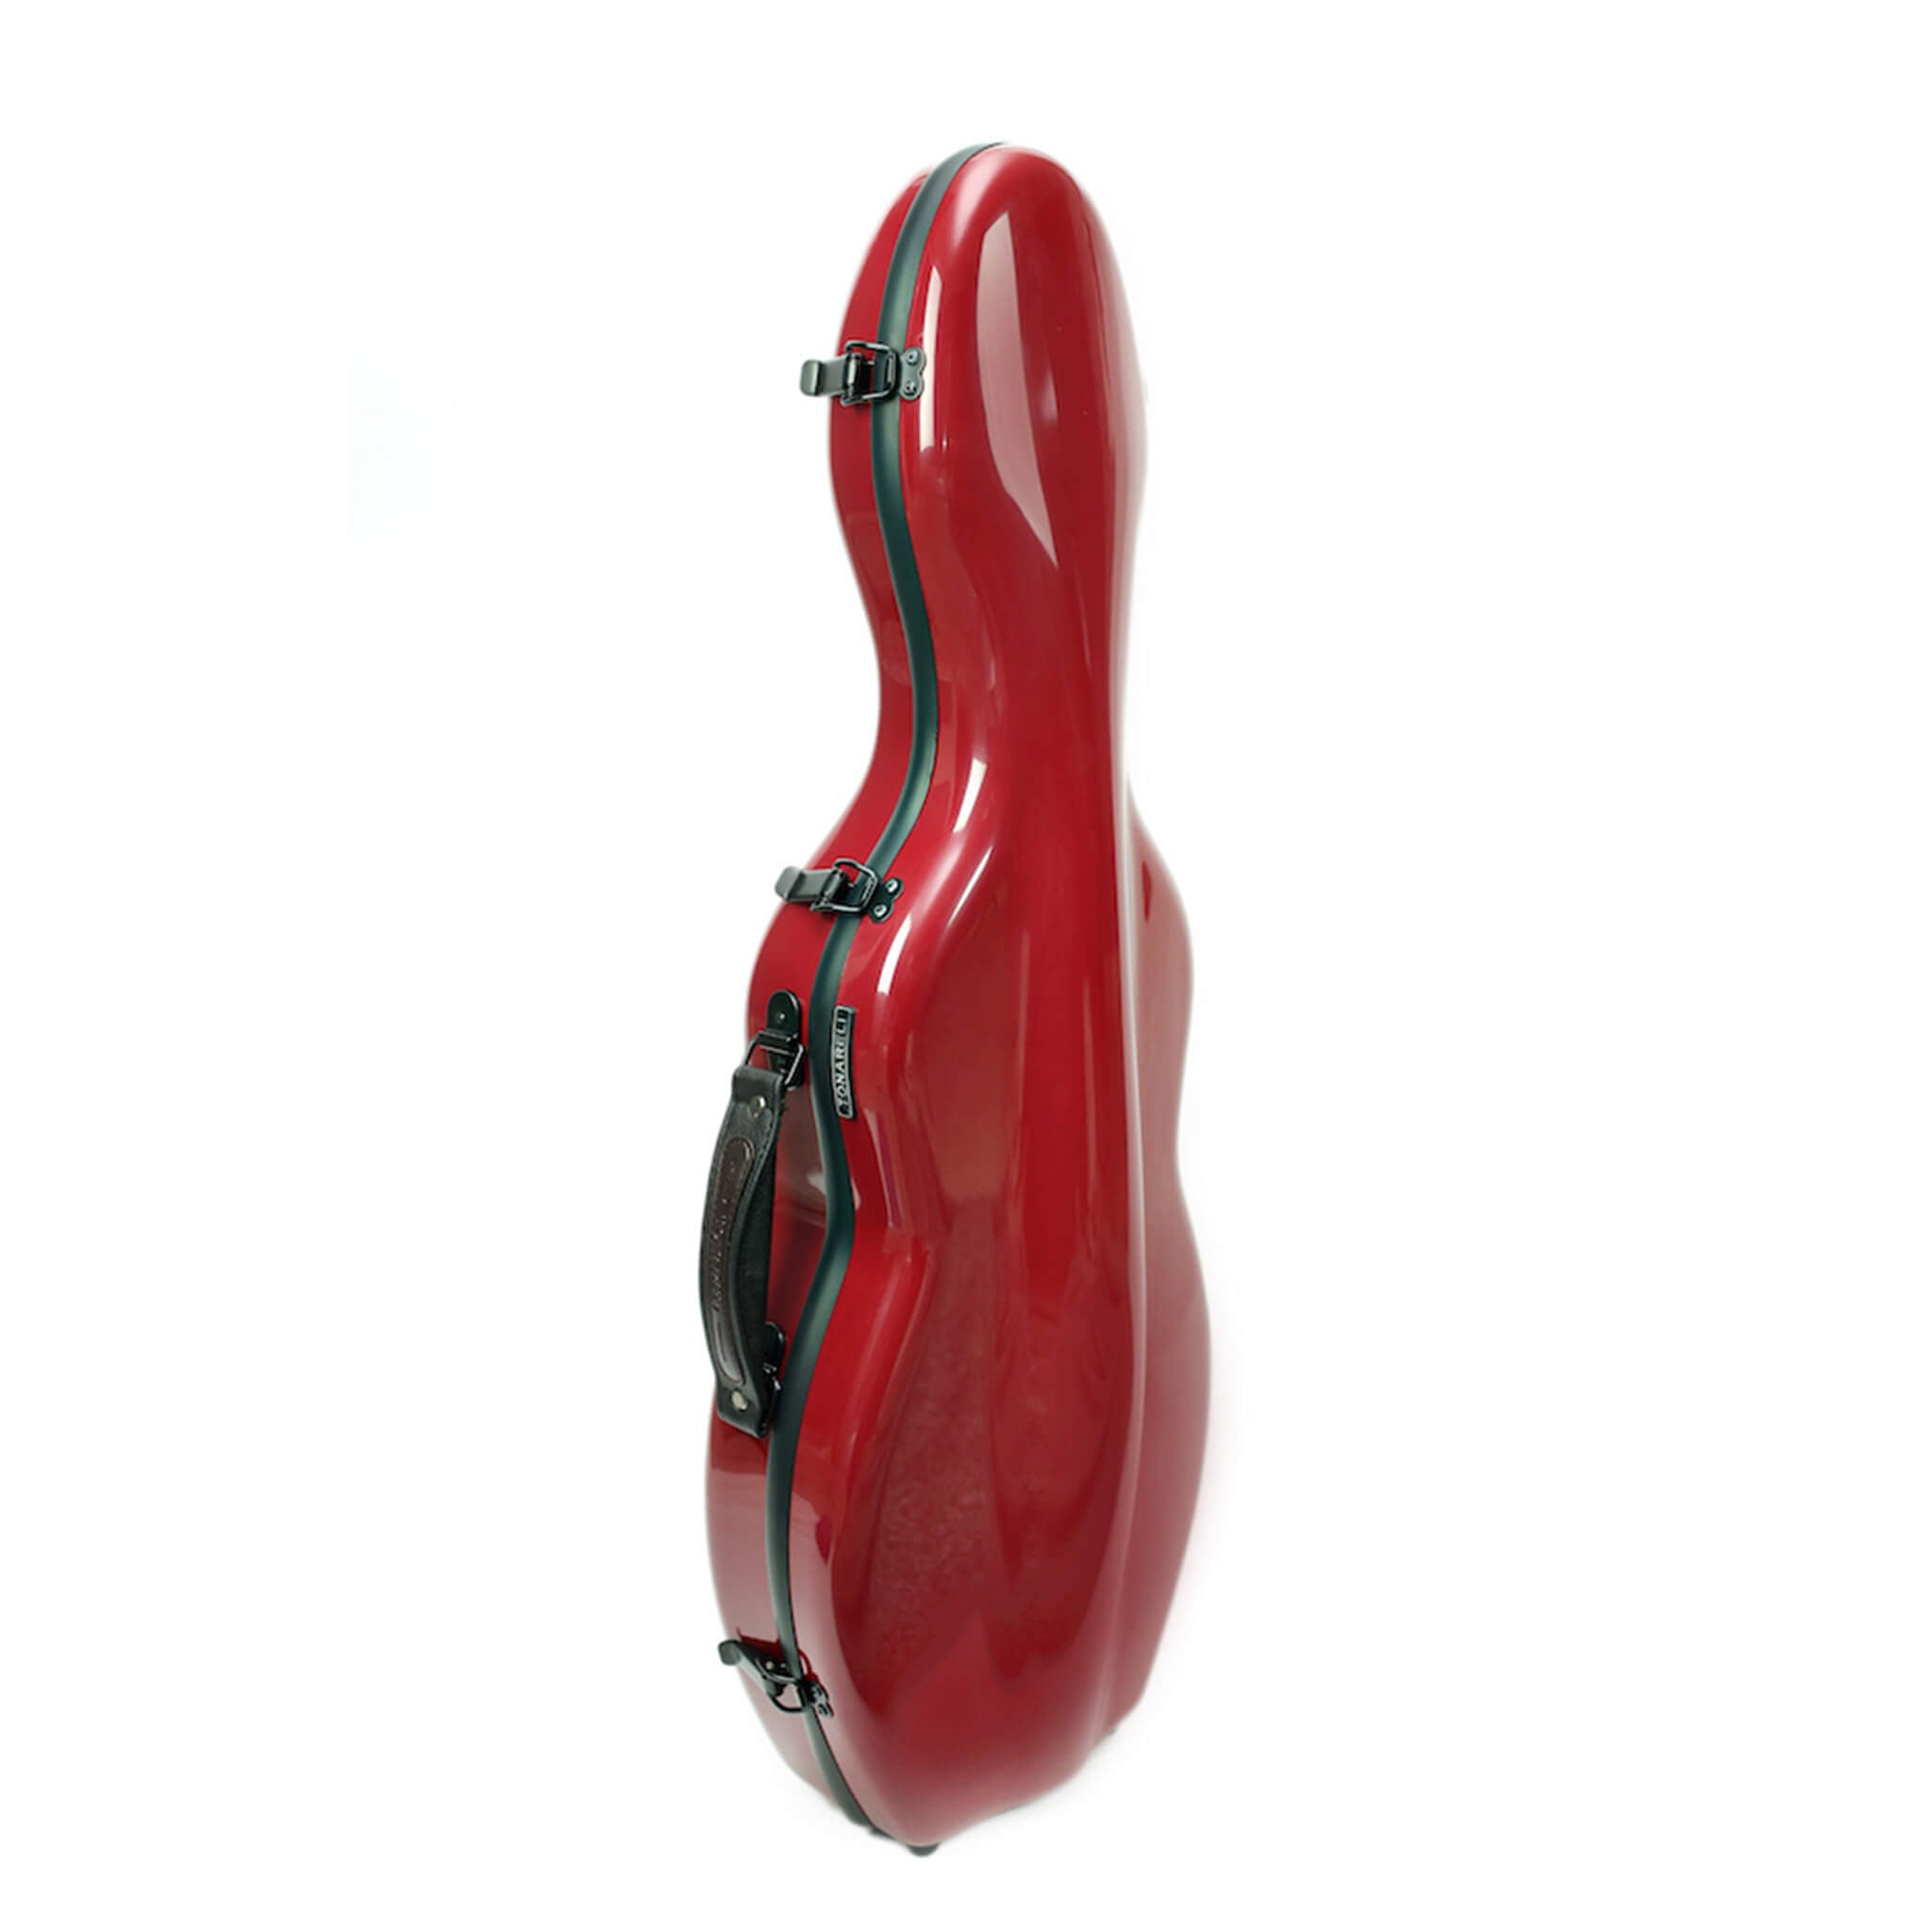 Tonareli Cello-Shaped Fiberglass Violin Case